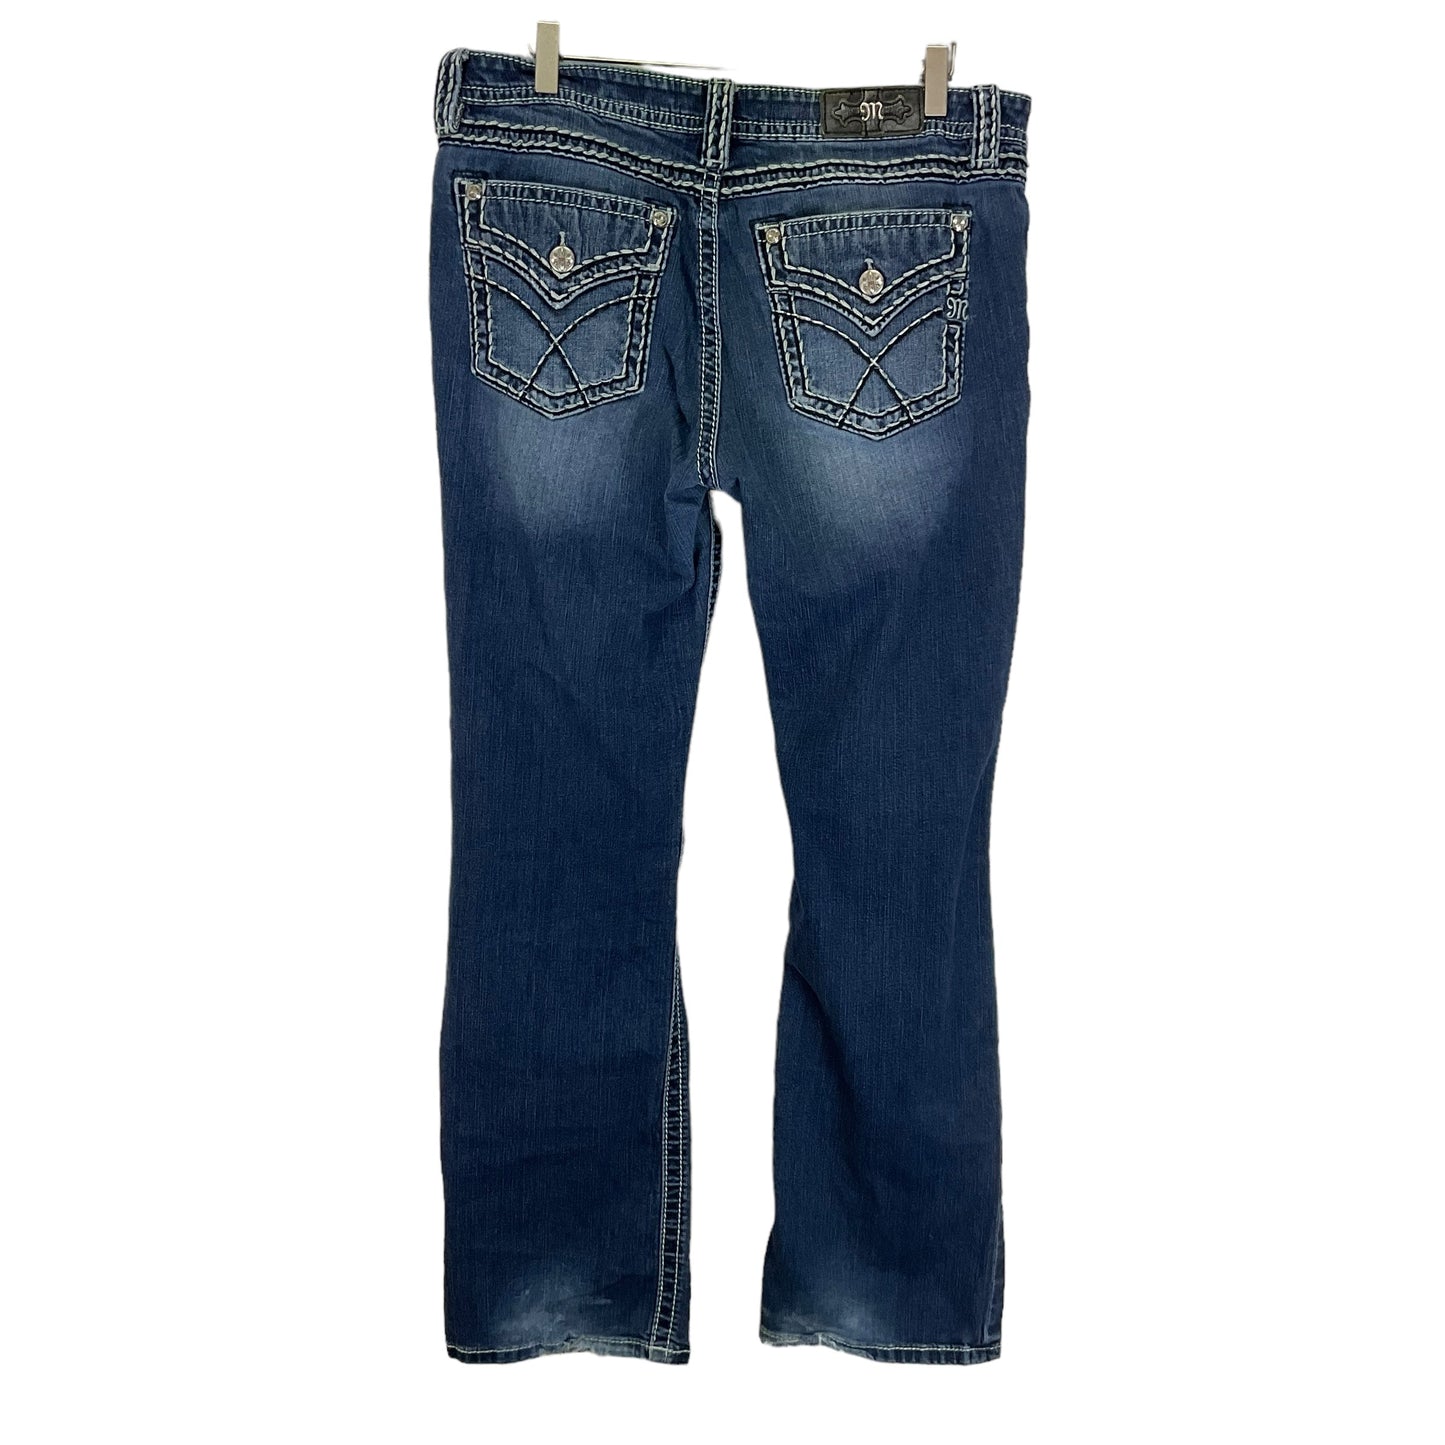 Blue Denim Jeans Boot Cut Miss Me, Size 8